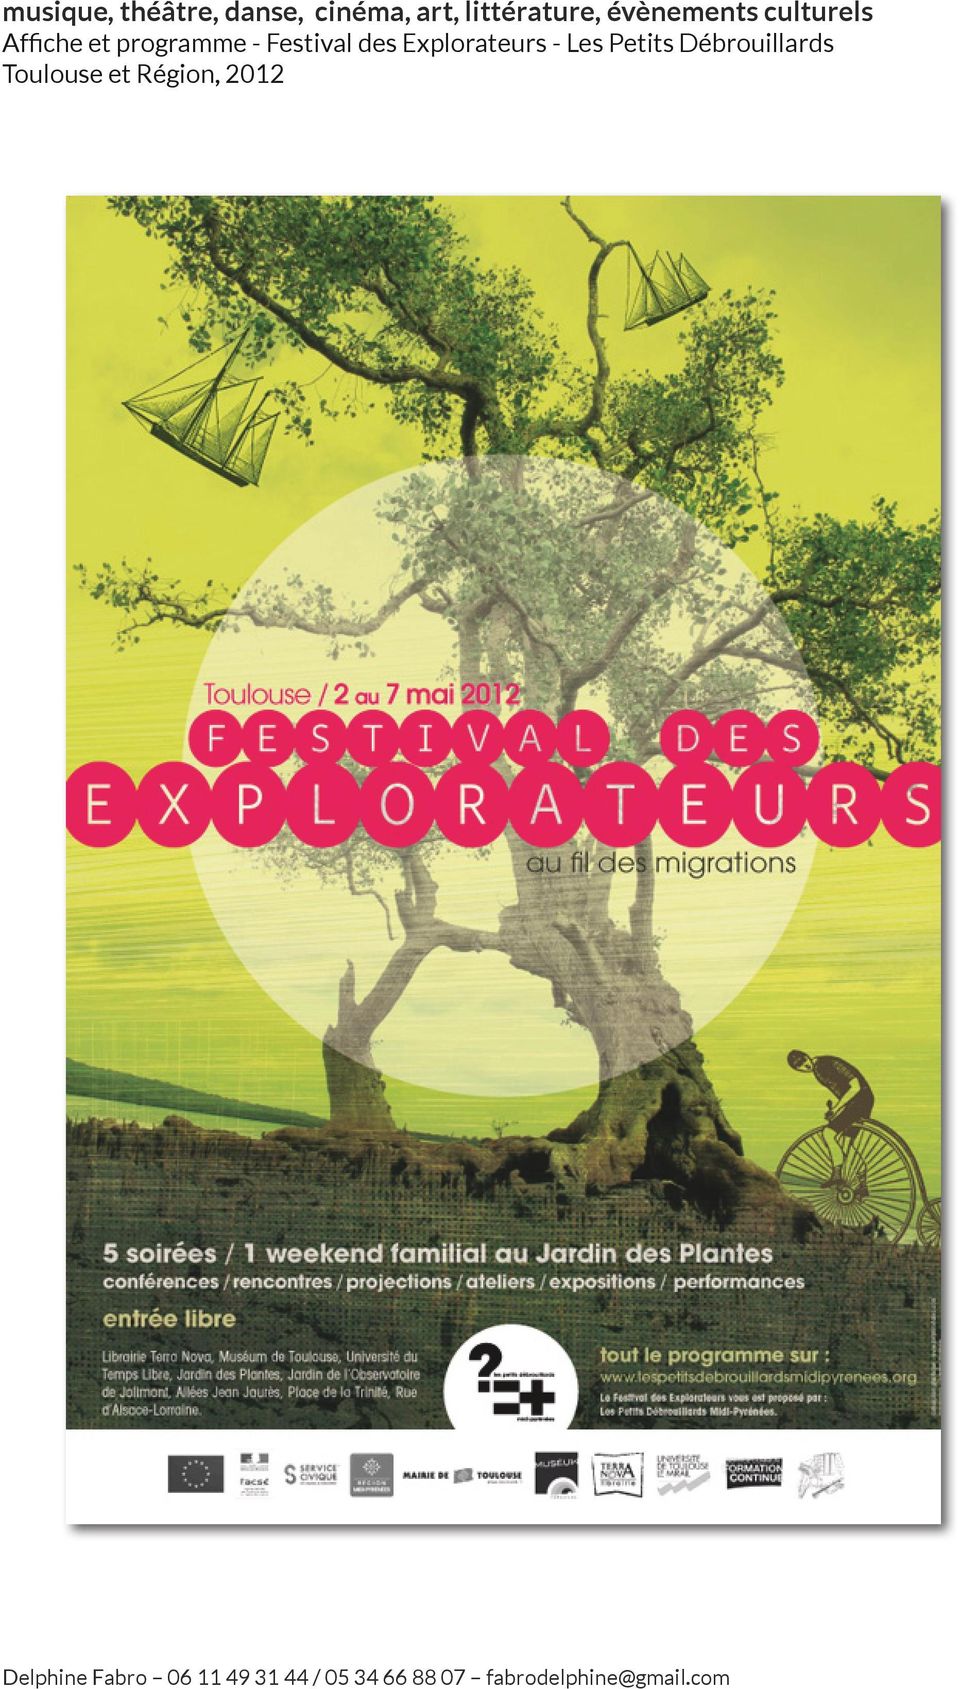 Explorateurs - Les